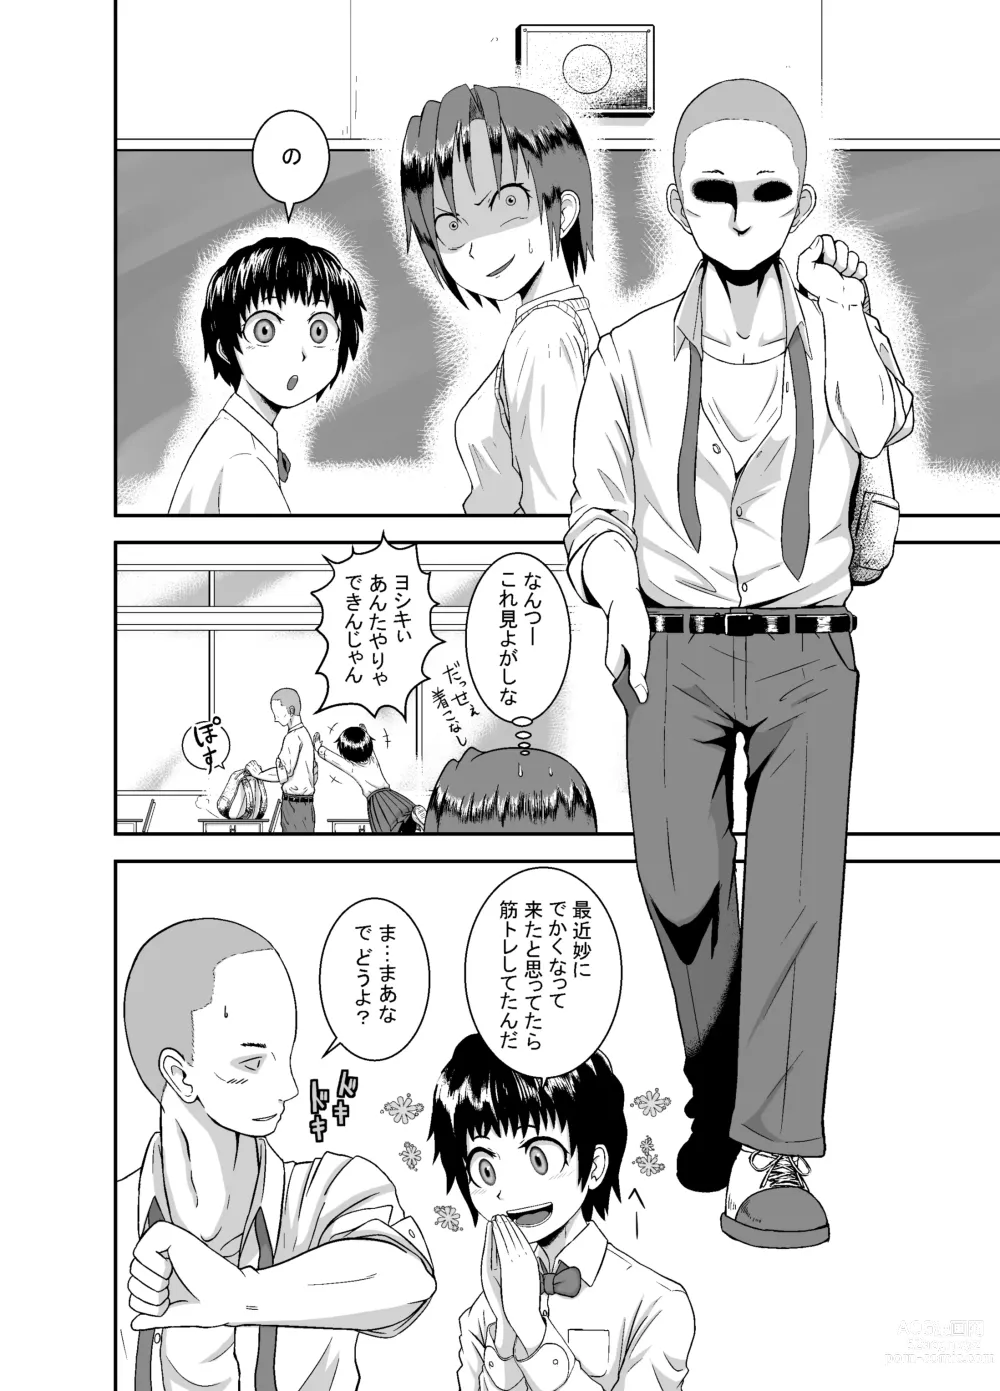 Page 7 of doujinshi Kimi ga Yarareru Kurai nara ~Genkikko Crisis~